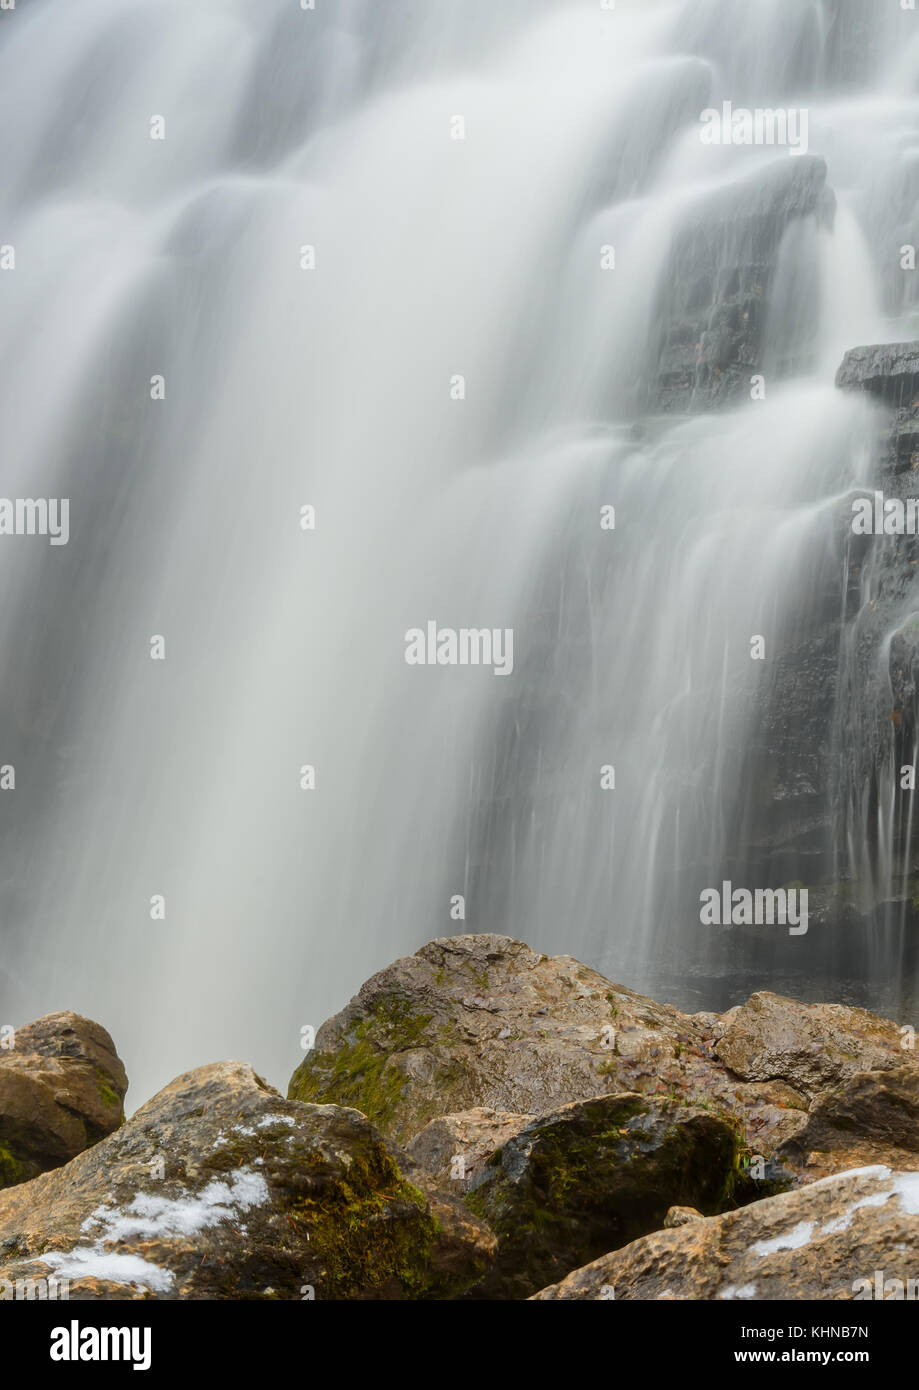 Belle vue sur la cascade avec de l'eau lisse tomber entre les roches et les pierres, l'exposition à long shot Banque D'Images